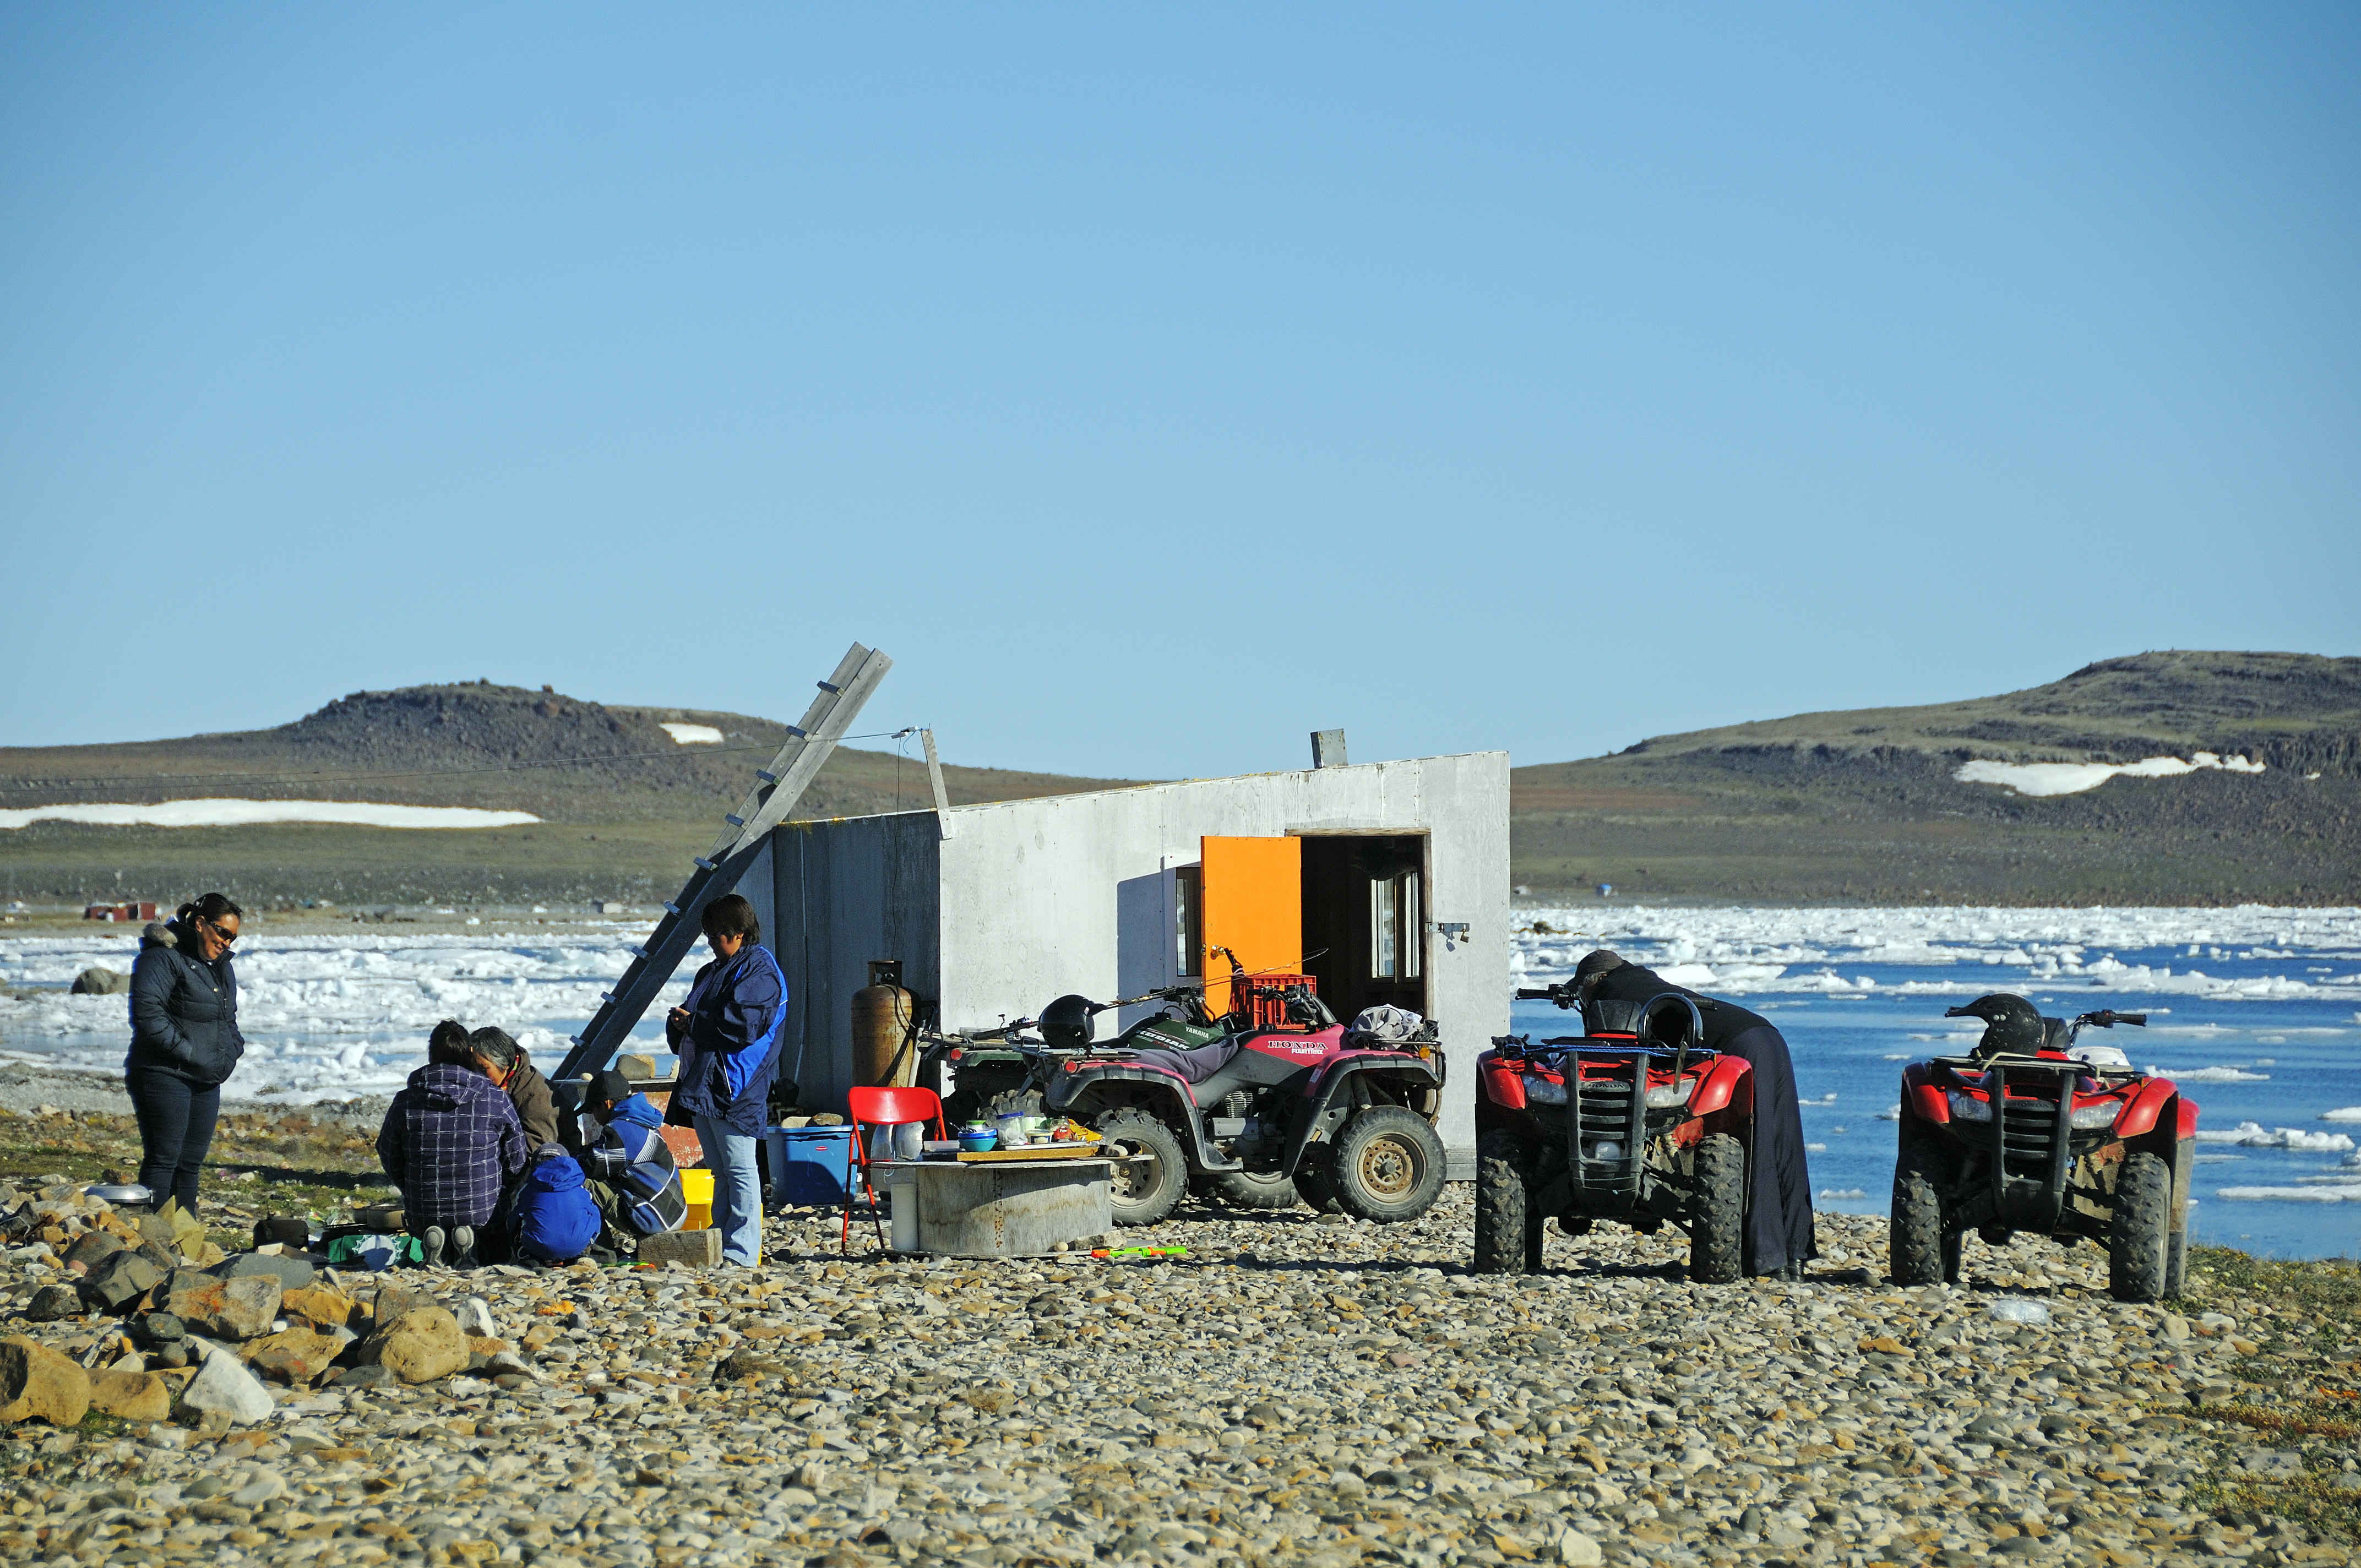 Familie vom Volk der Inuit an ihrer Angler-Hütte am Ufer der Beaufort Sea, Nordpolarmeer, Victoria Island (vorher Holman Island), Dorf Ulukhaktok, Northwest Territories, Kanada, Amerika